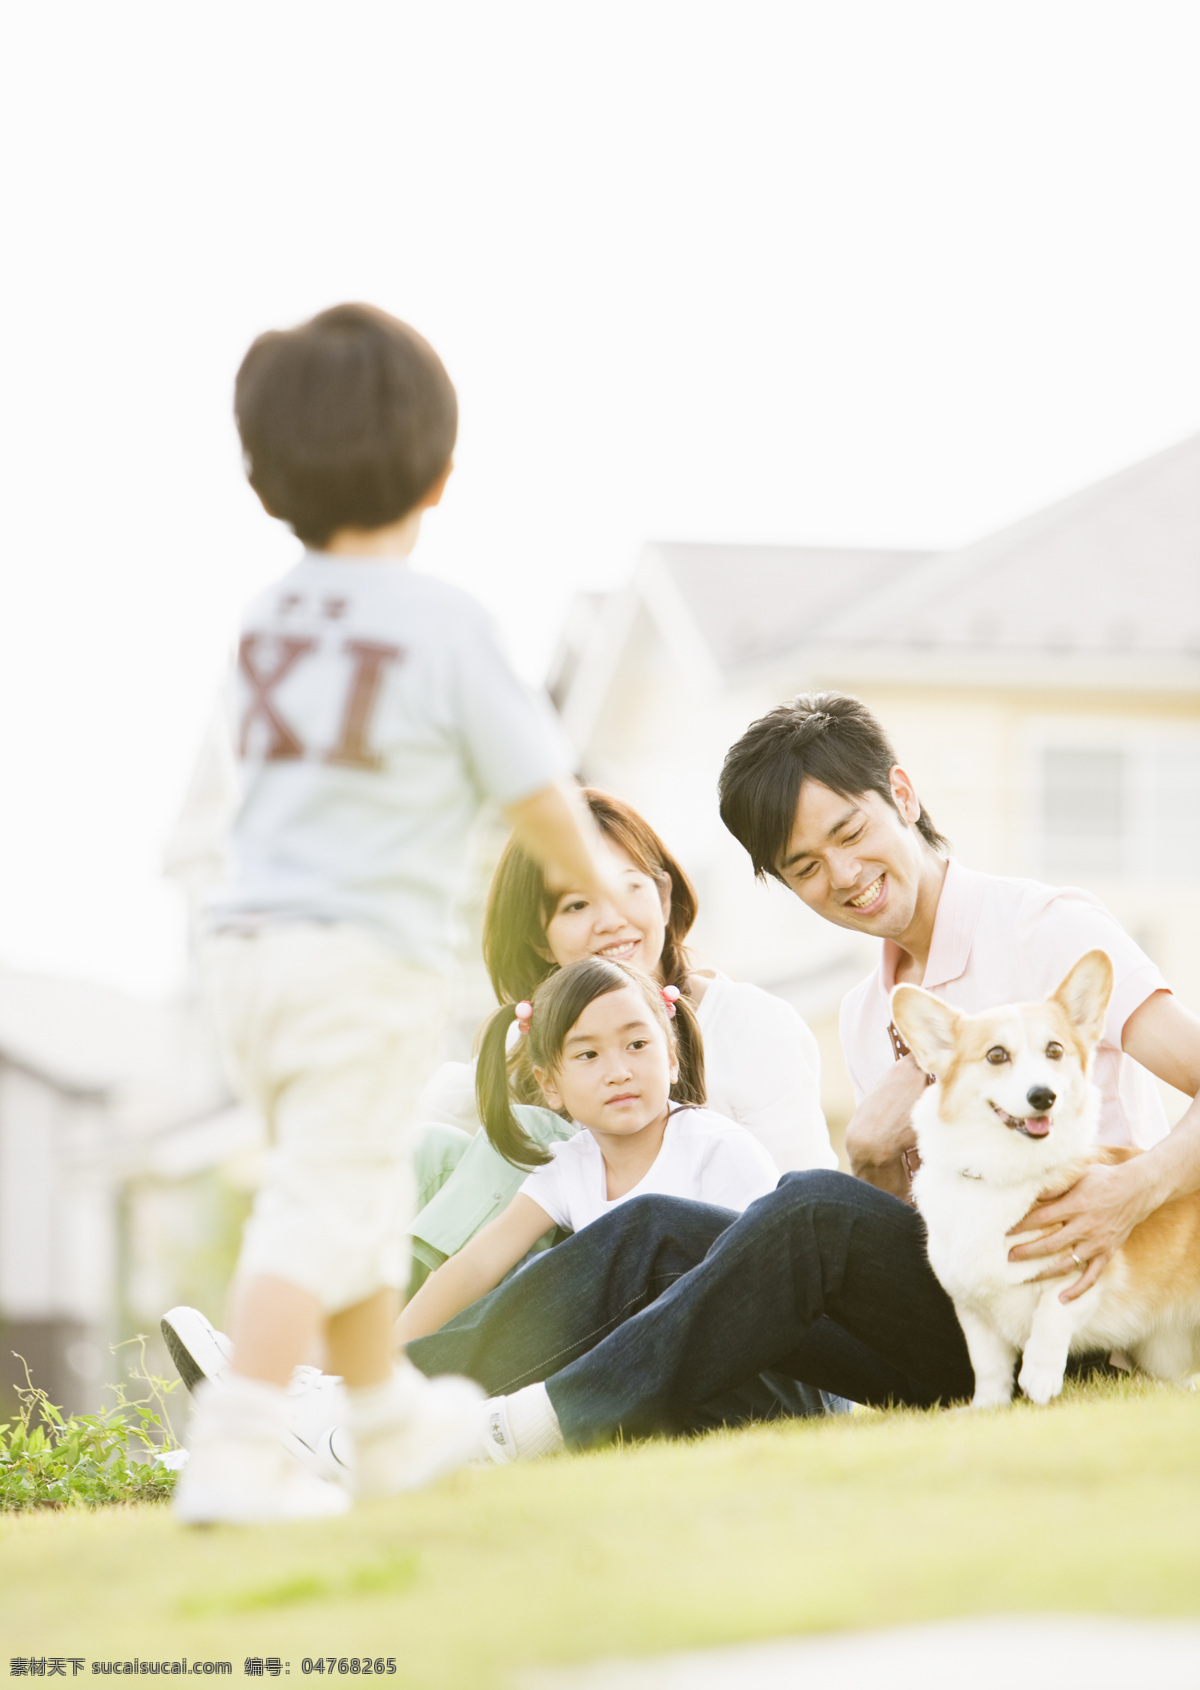 一家人 其乐融融 阳光 绿草地 房子 幸福一家人 白色帆布鞋 晒太阳 宠物 玩耍 生活人物 人物图片